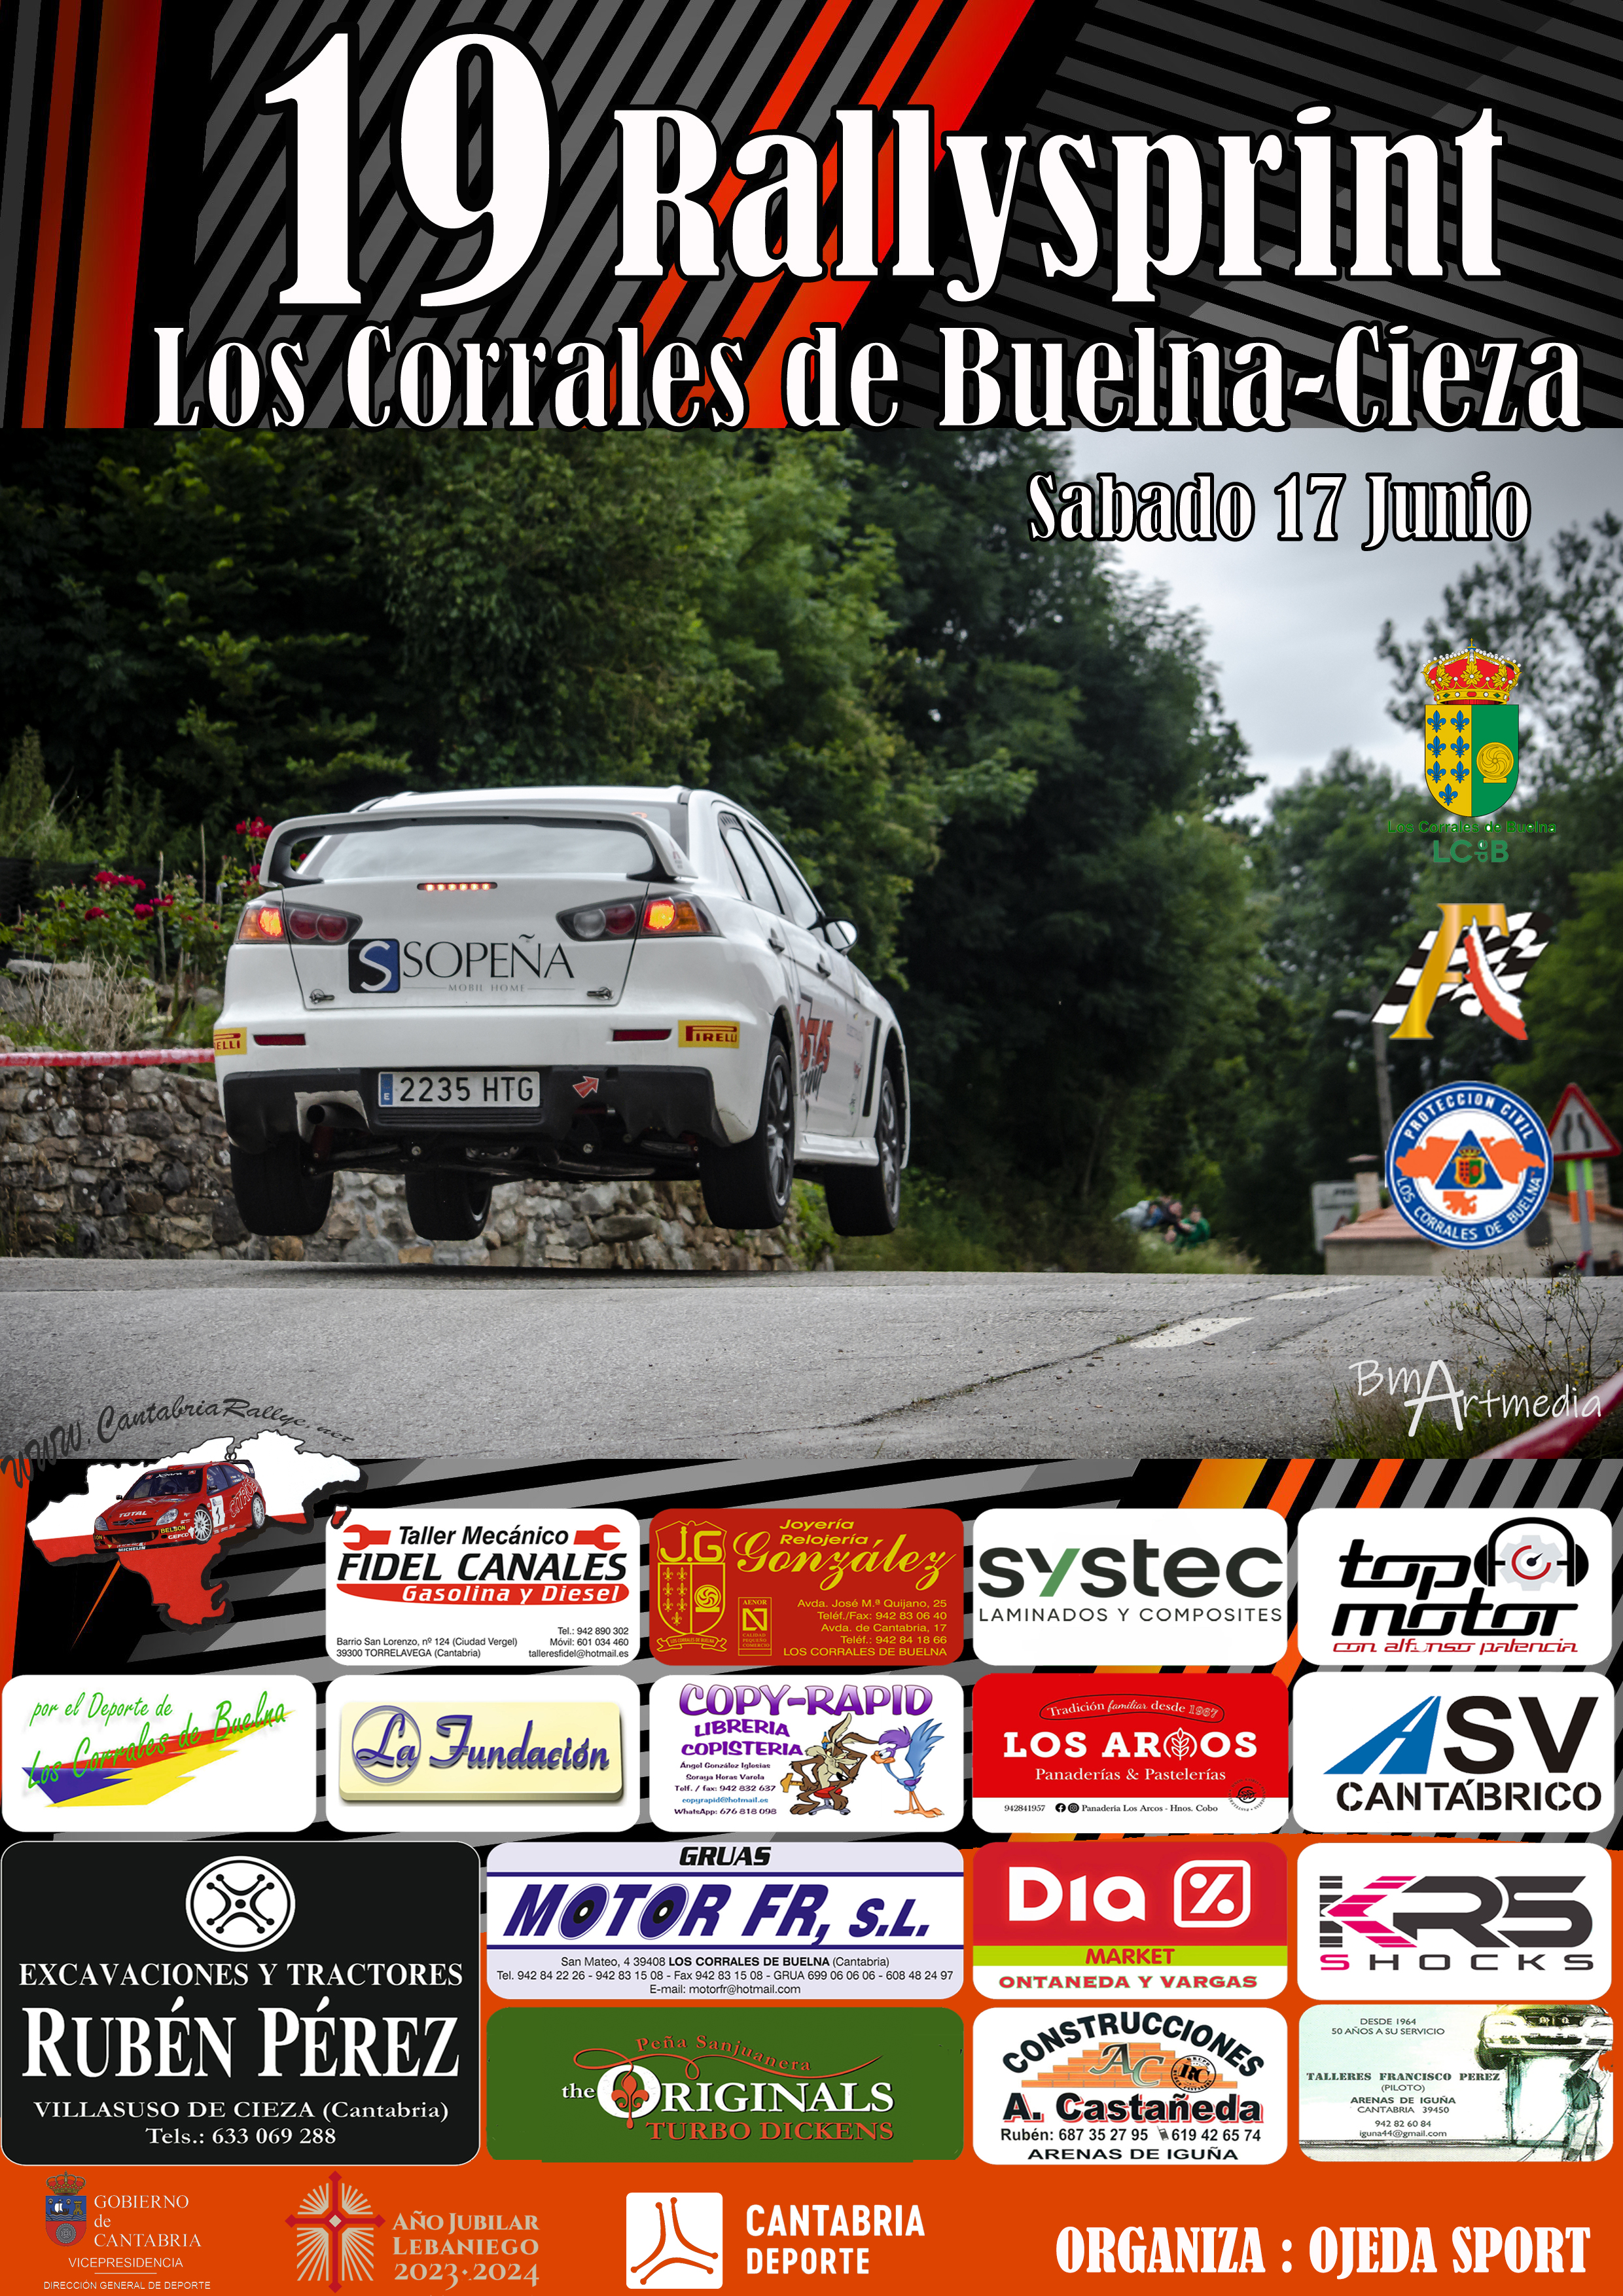 Segunda prueba del campeonato de Cantabria de Rallysprint .